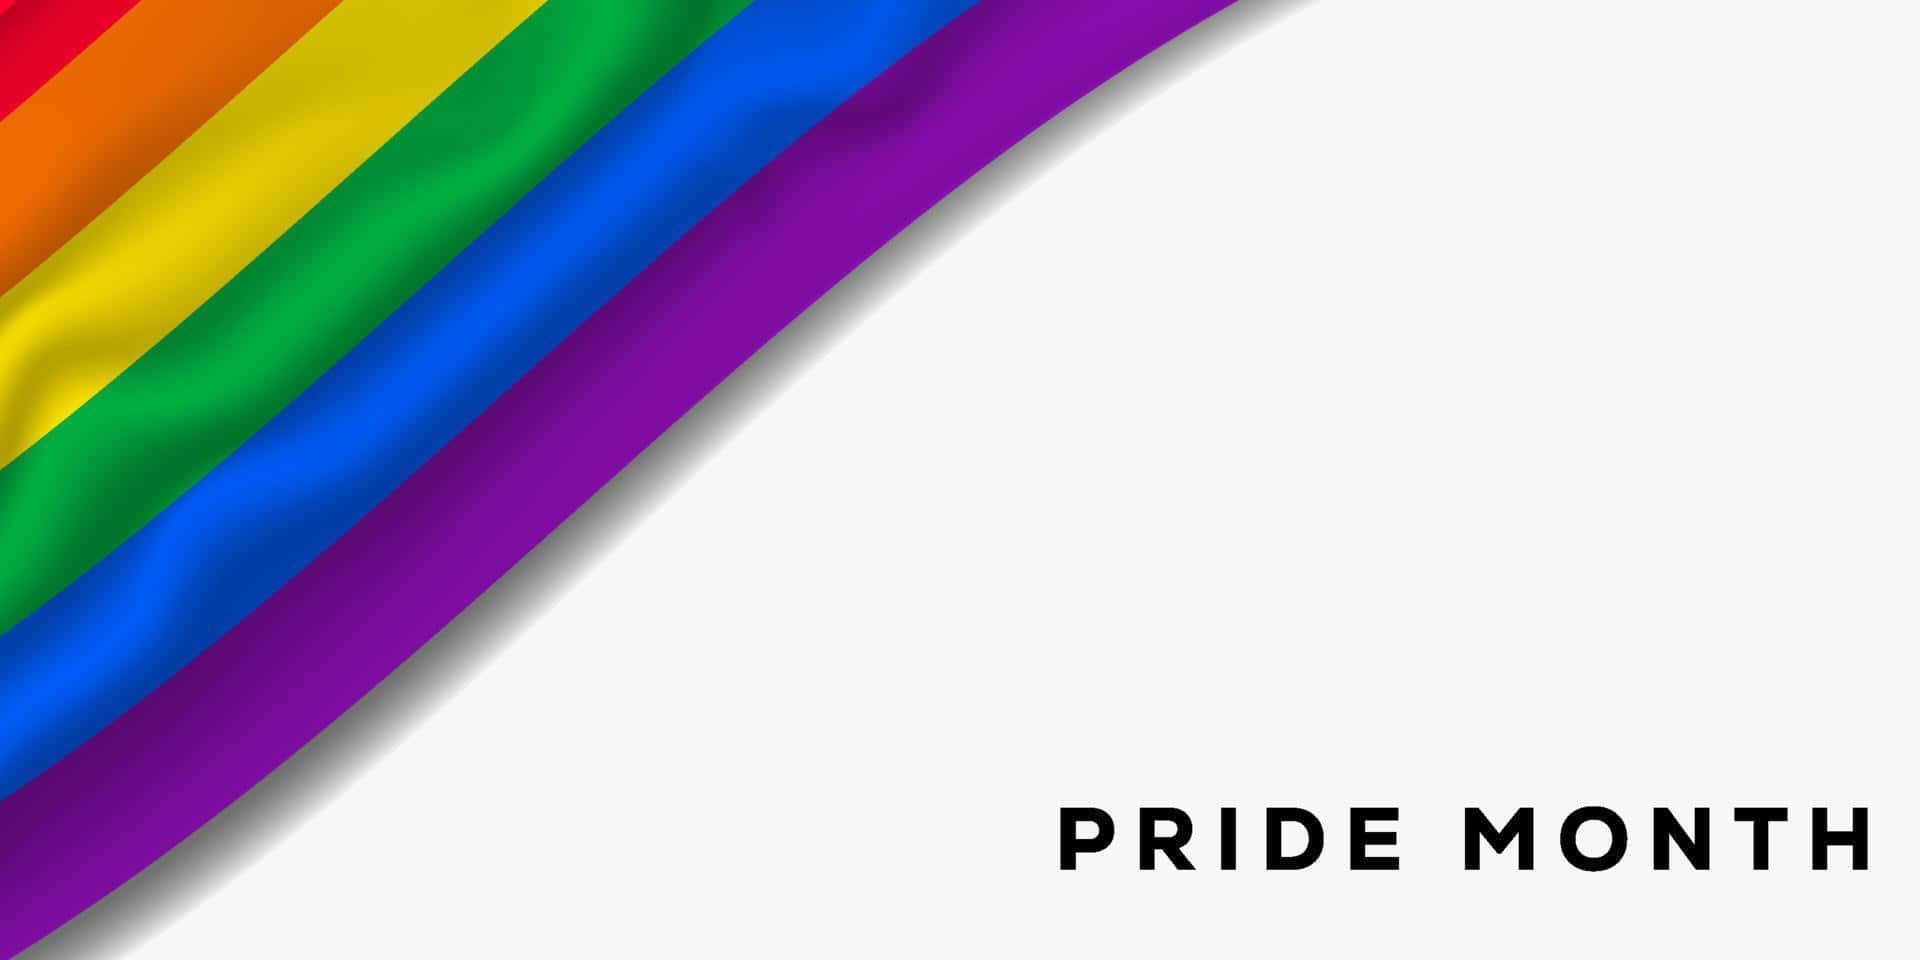 Einsymbol Für Akzeptanz Und Inklusion, Diese Farbenfrohe Regenbogen-pride-flagge Weht Im Wind Der Gleichberechtigung Und Liebe.